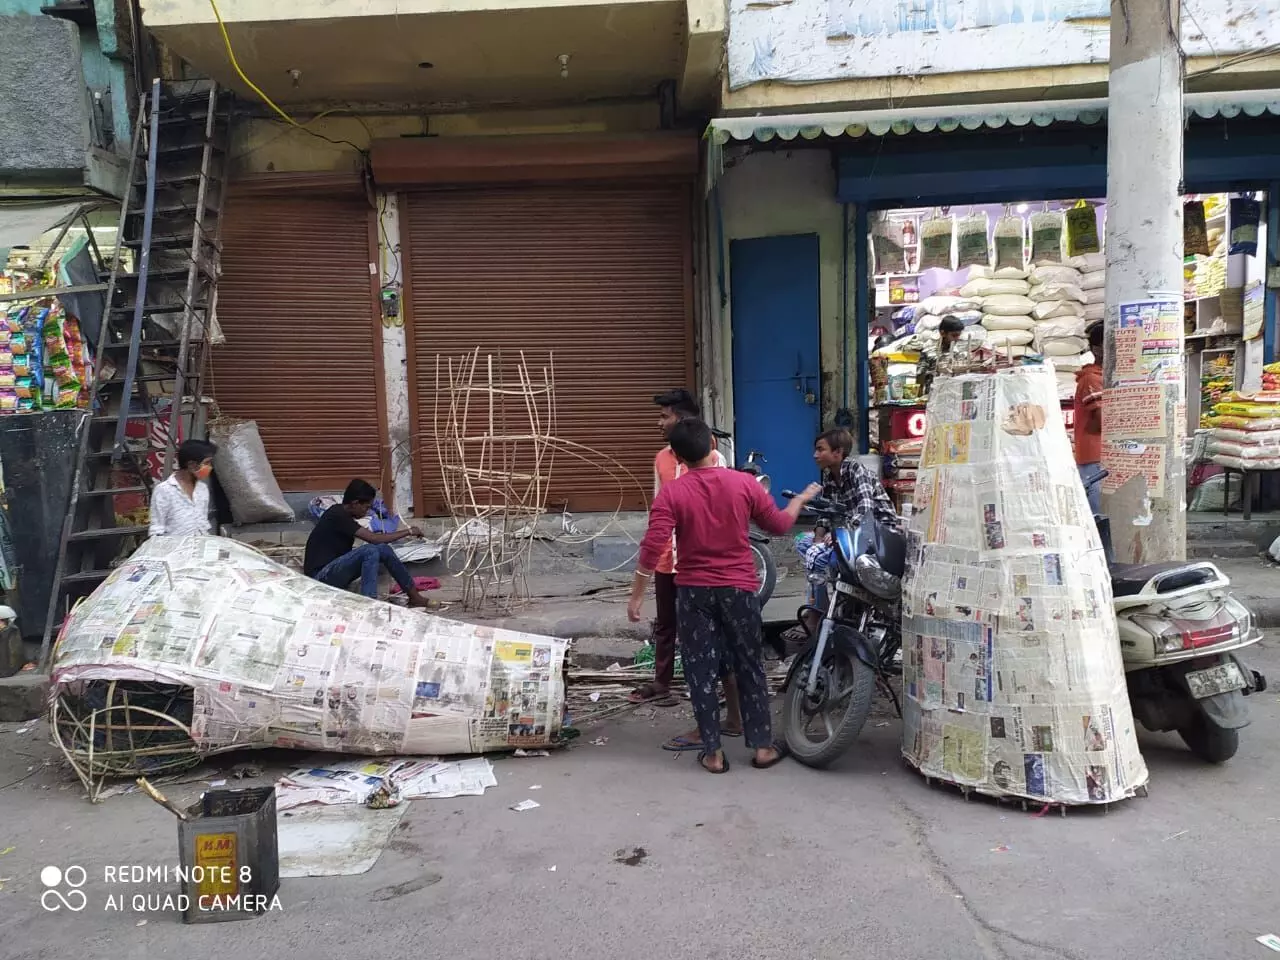 दिल्लीः बेरोजगार हुए रावण का पुतला बनाने वाले कारीगर, दो जून की रोटी का संकट